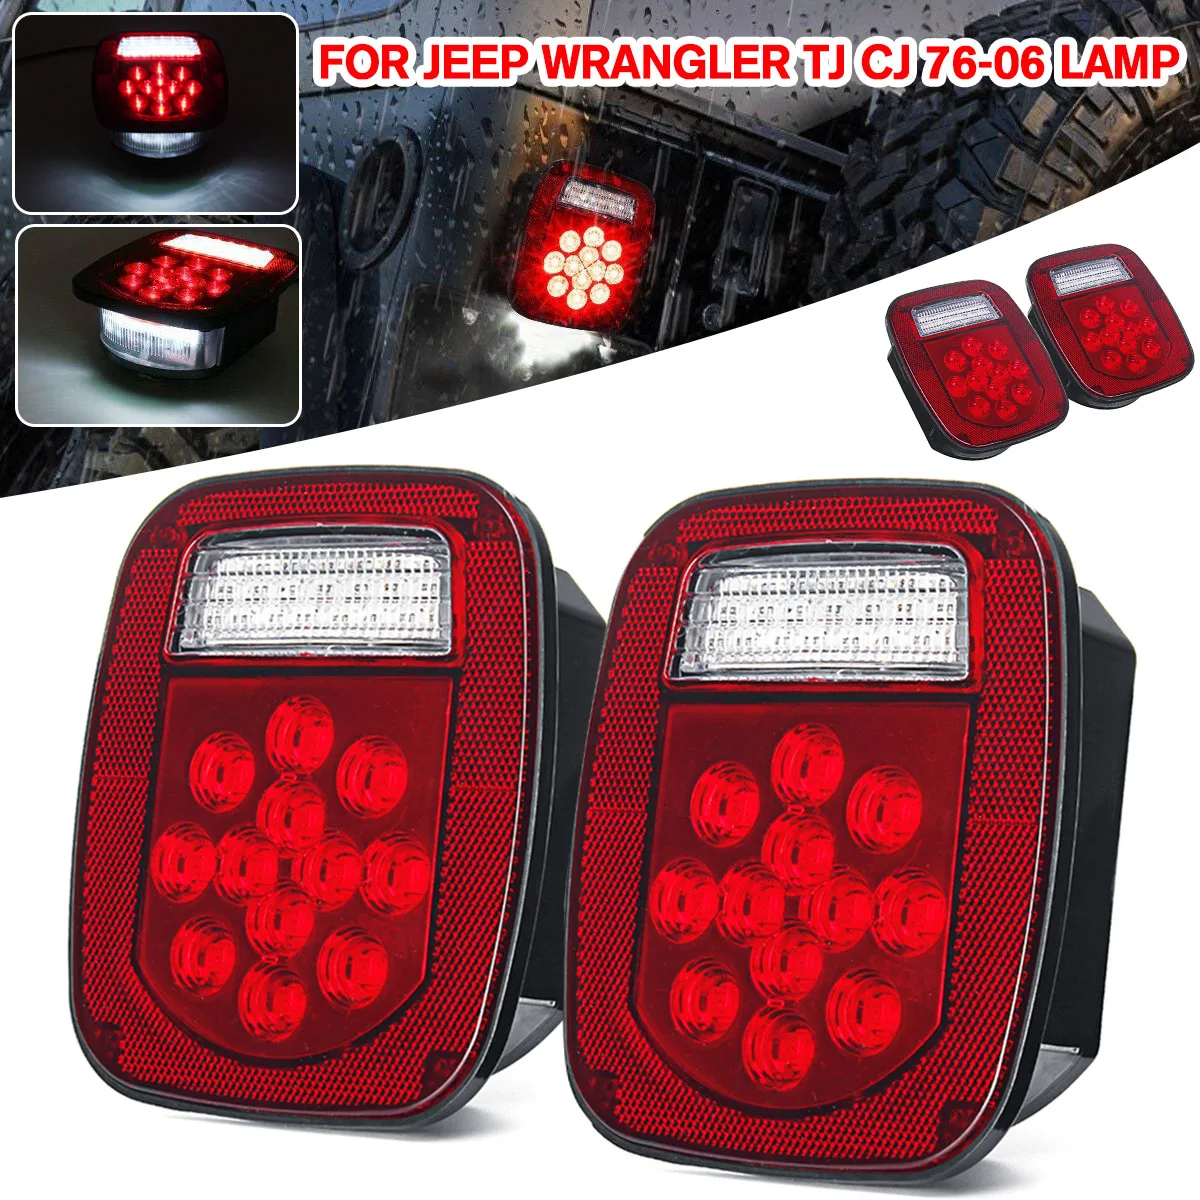 

2PCS 39 LEDs Red+White Double Colors Tail Light Brake Reverse Turn Signal Light For YJ TJ CJ JK Truck Trailer Van